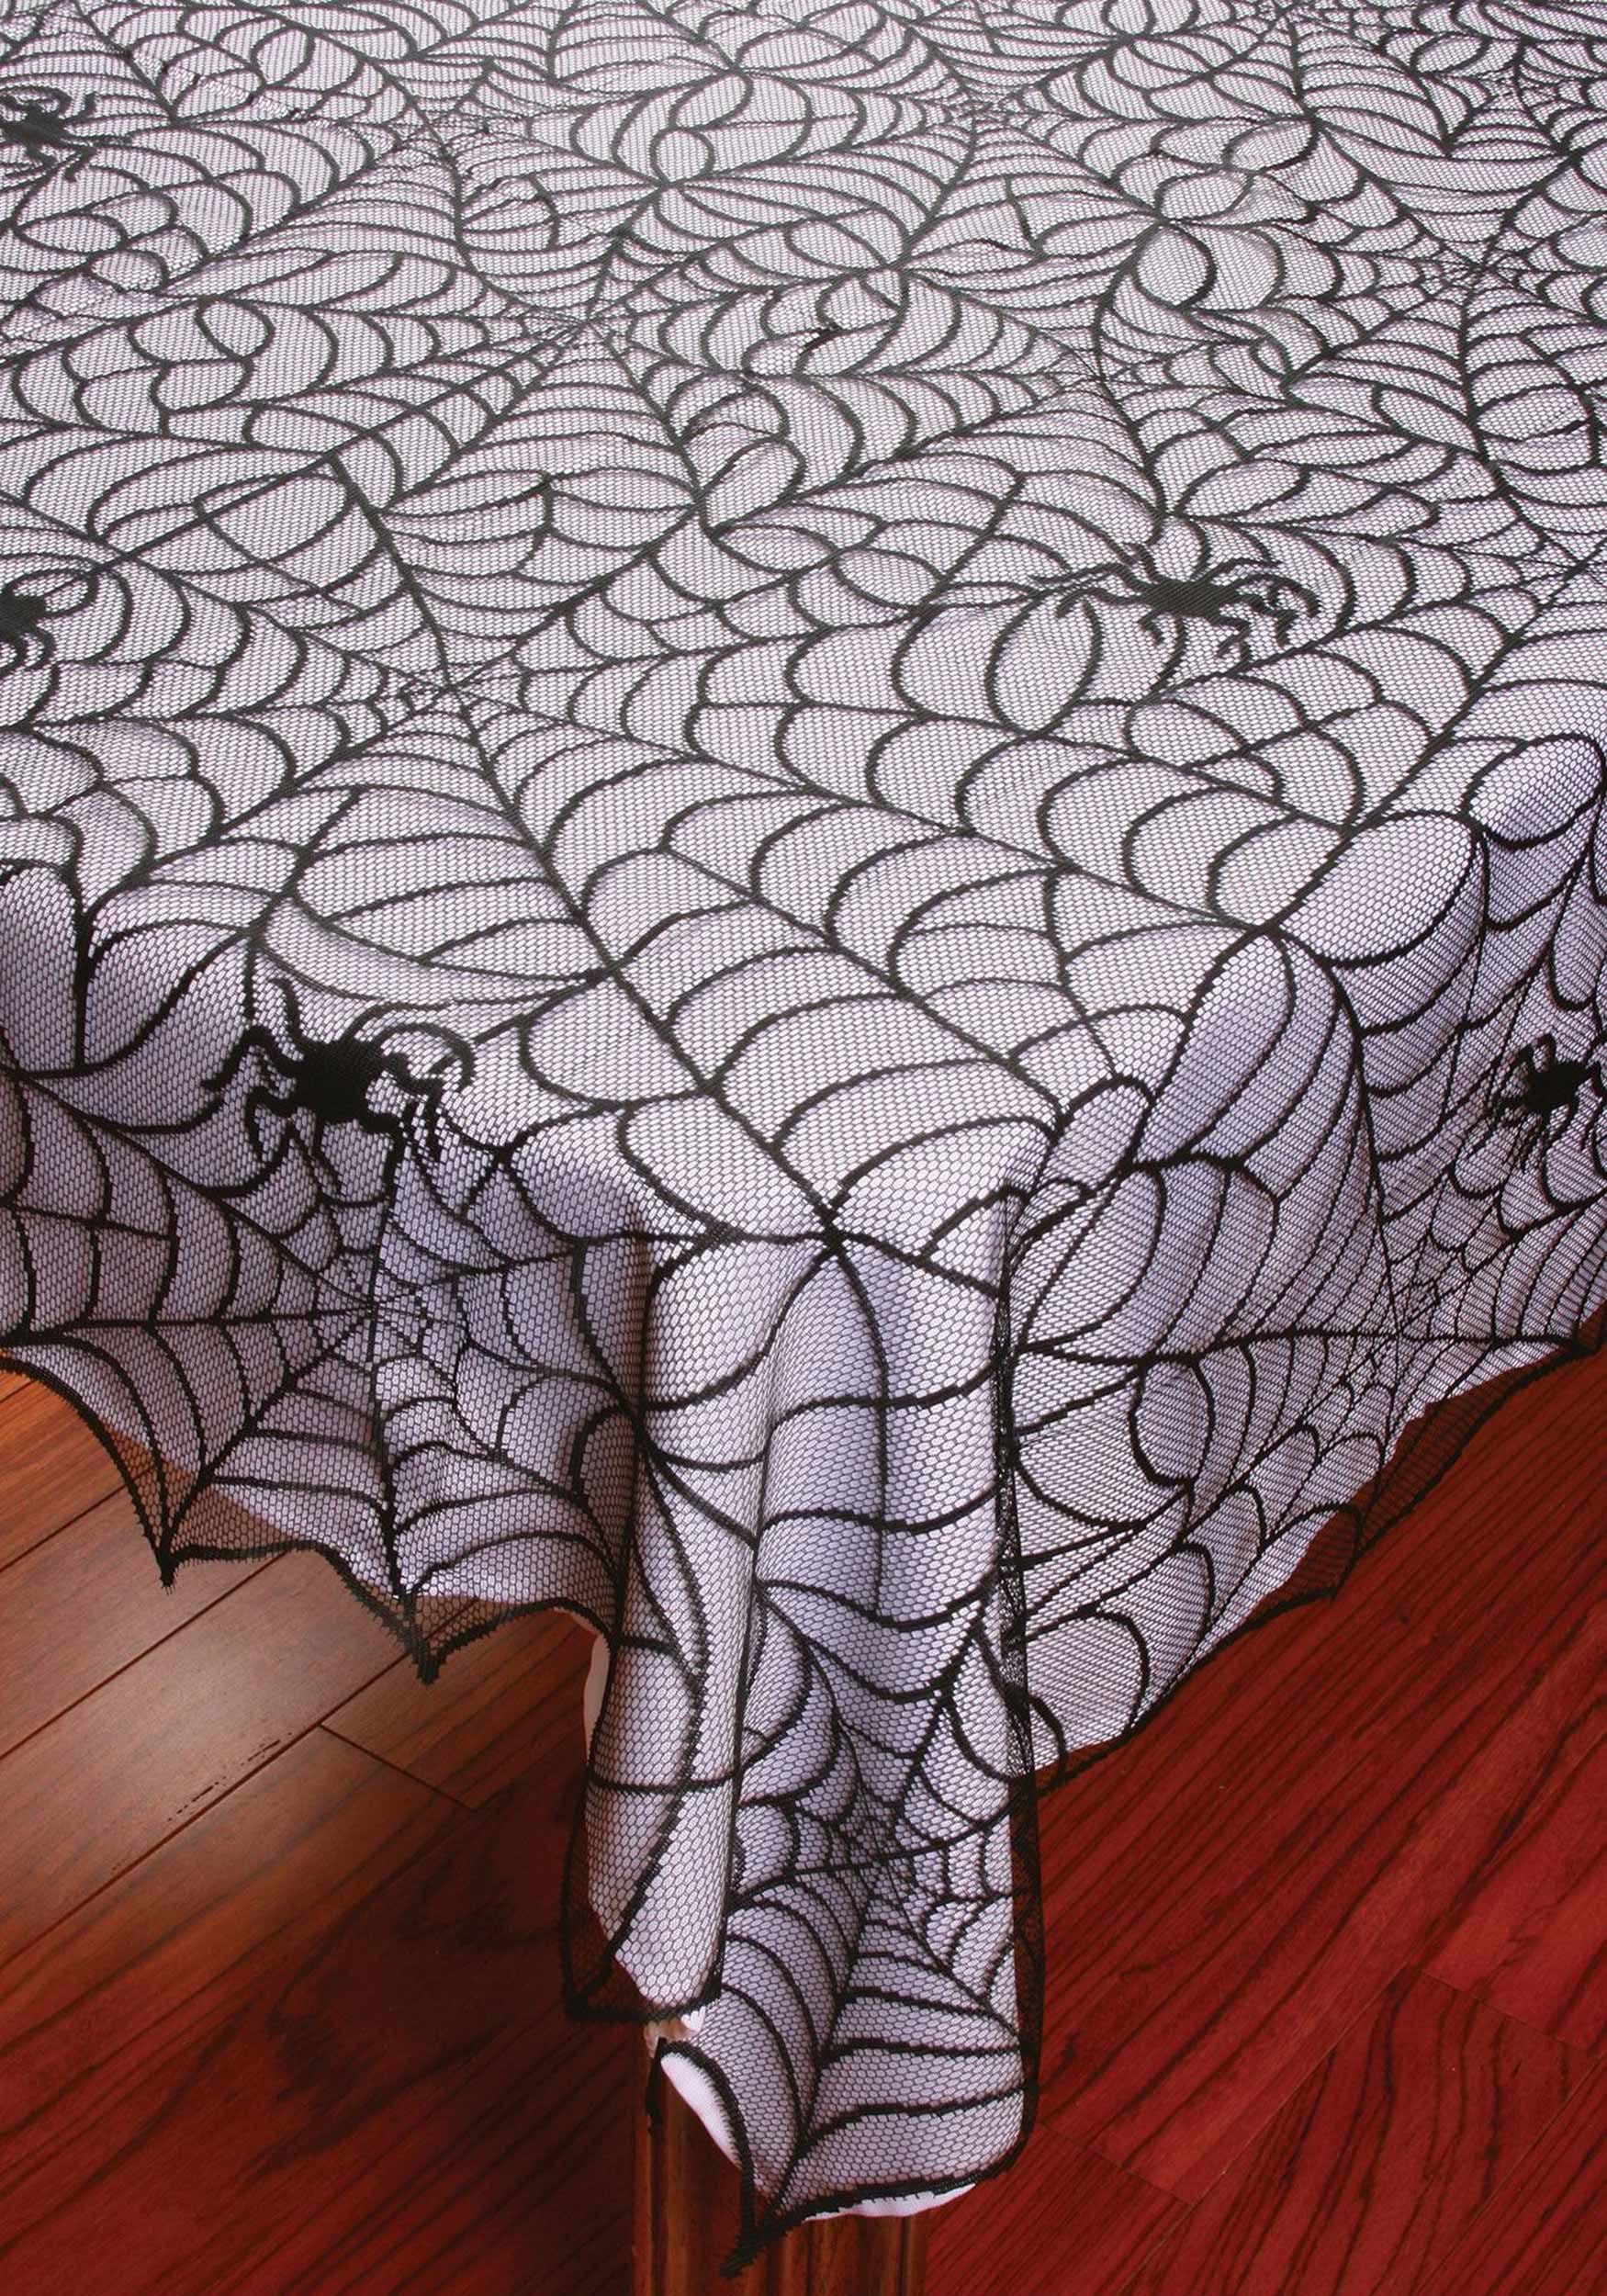 Lacy Spiderweb Decorative Tablecloth